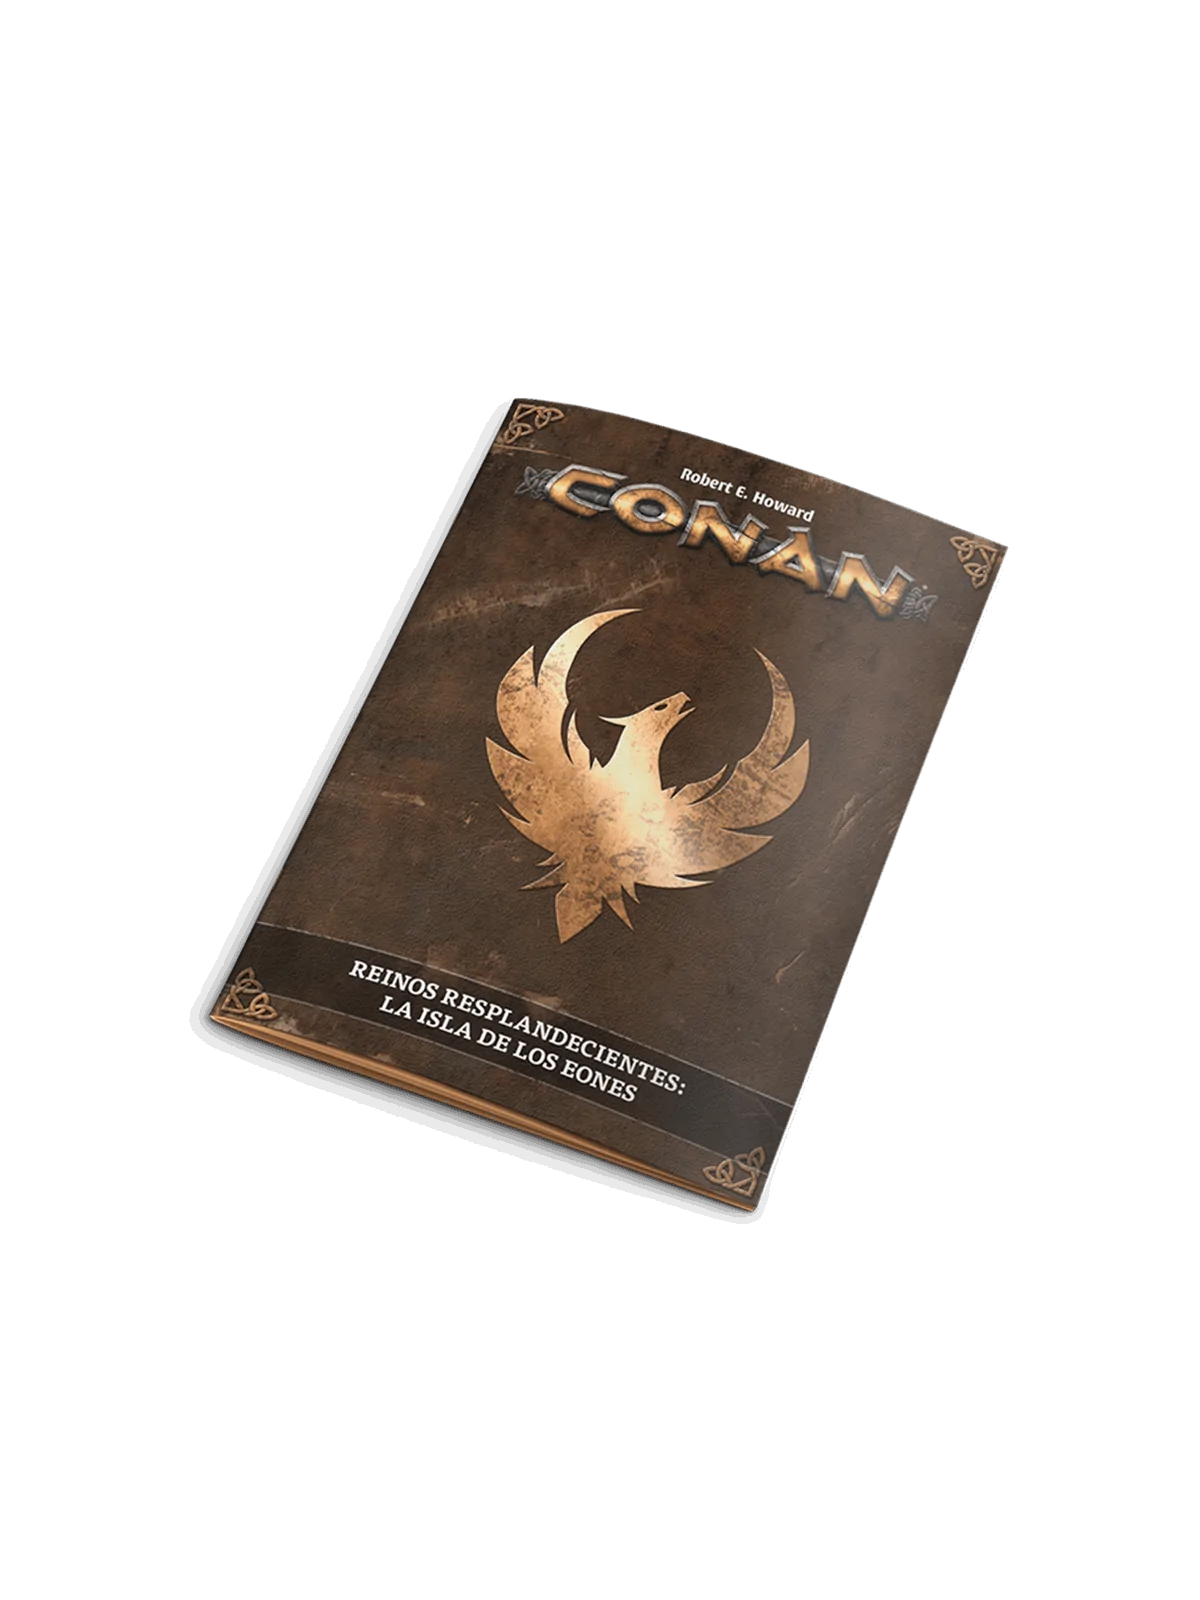 Comprar Conan: Reinos Resplandecientes - El Ojo del Buitre barato al m